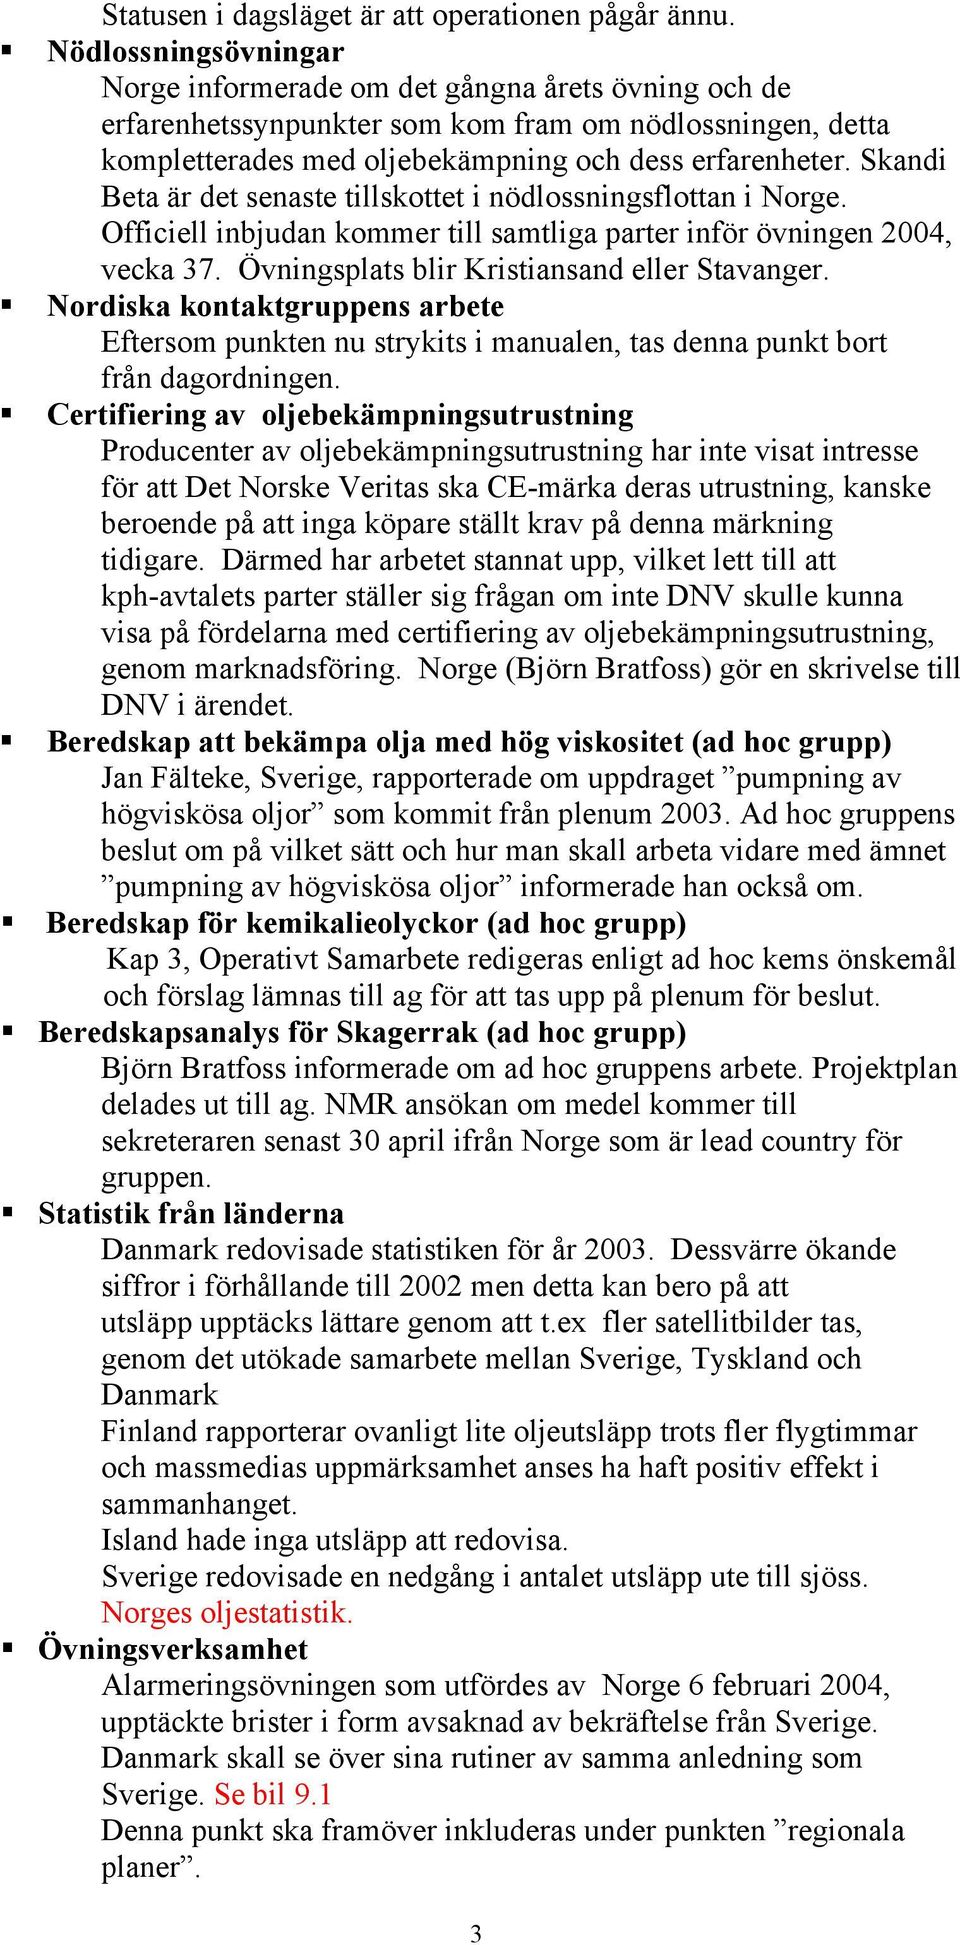 Skandi Beta är det senaste tillskottet i nödlossningsflottan i Norge. Officiell inbjudan kommer till samtliga parter inför övningen 2004, vecka 37. Övningsplats blir Kristiansand eller Stavanger.